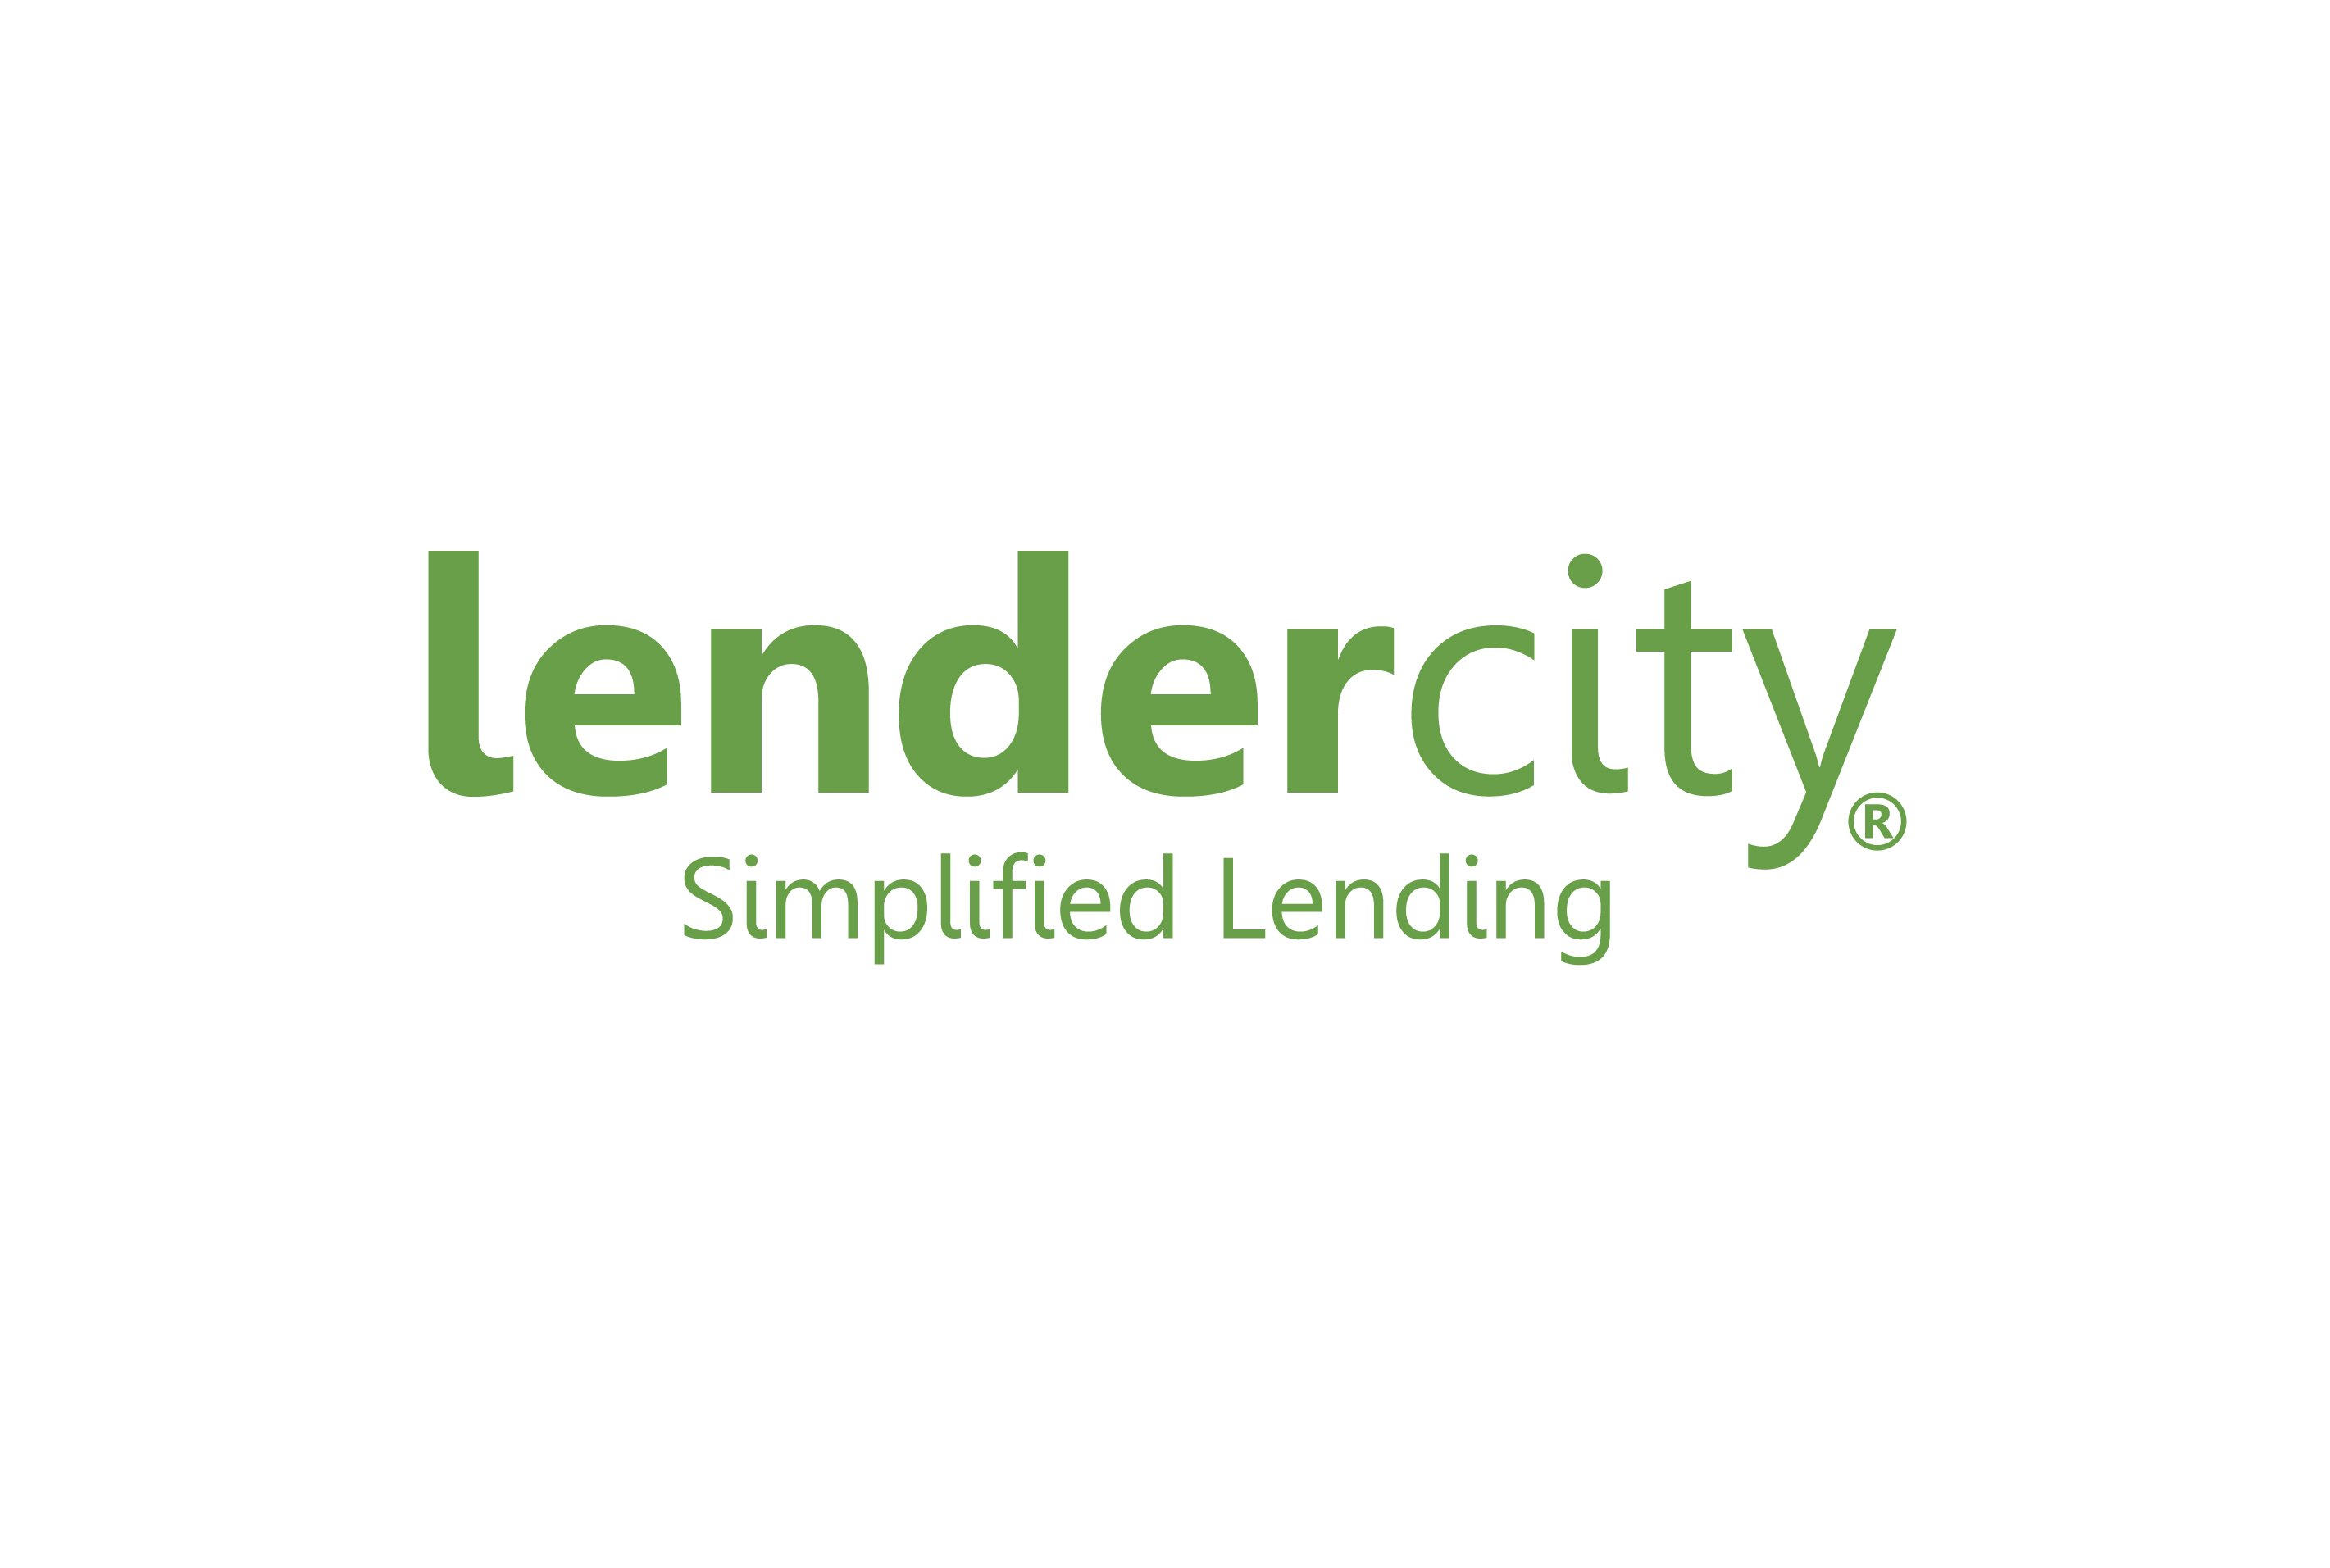 LenderCity